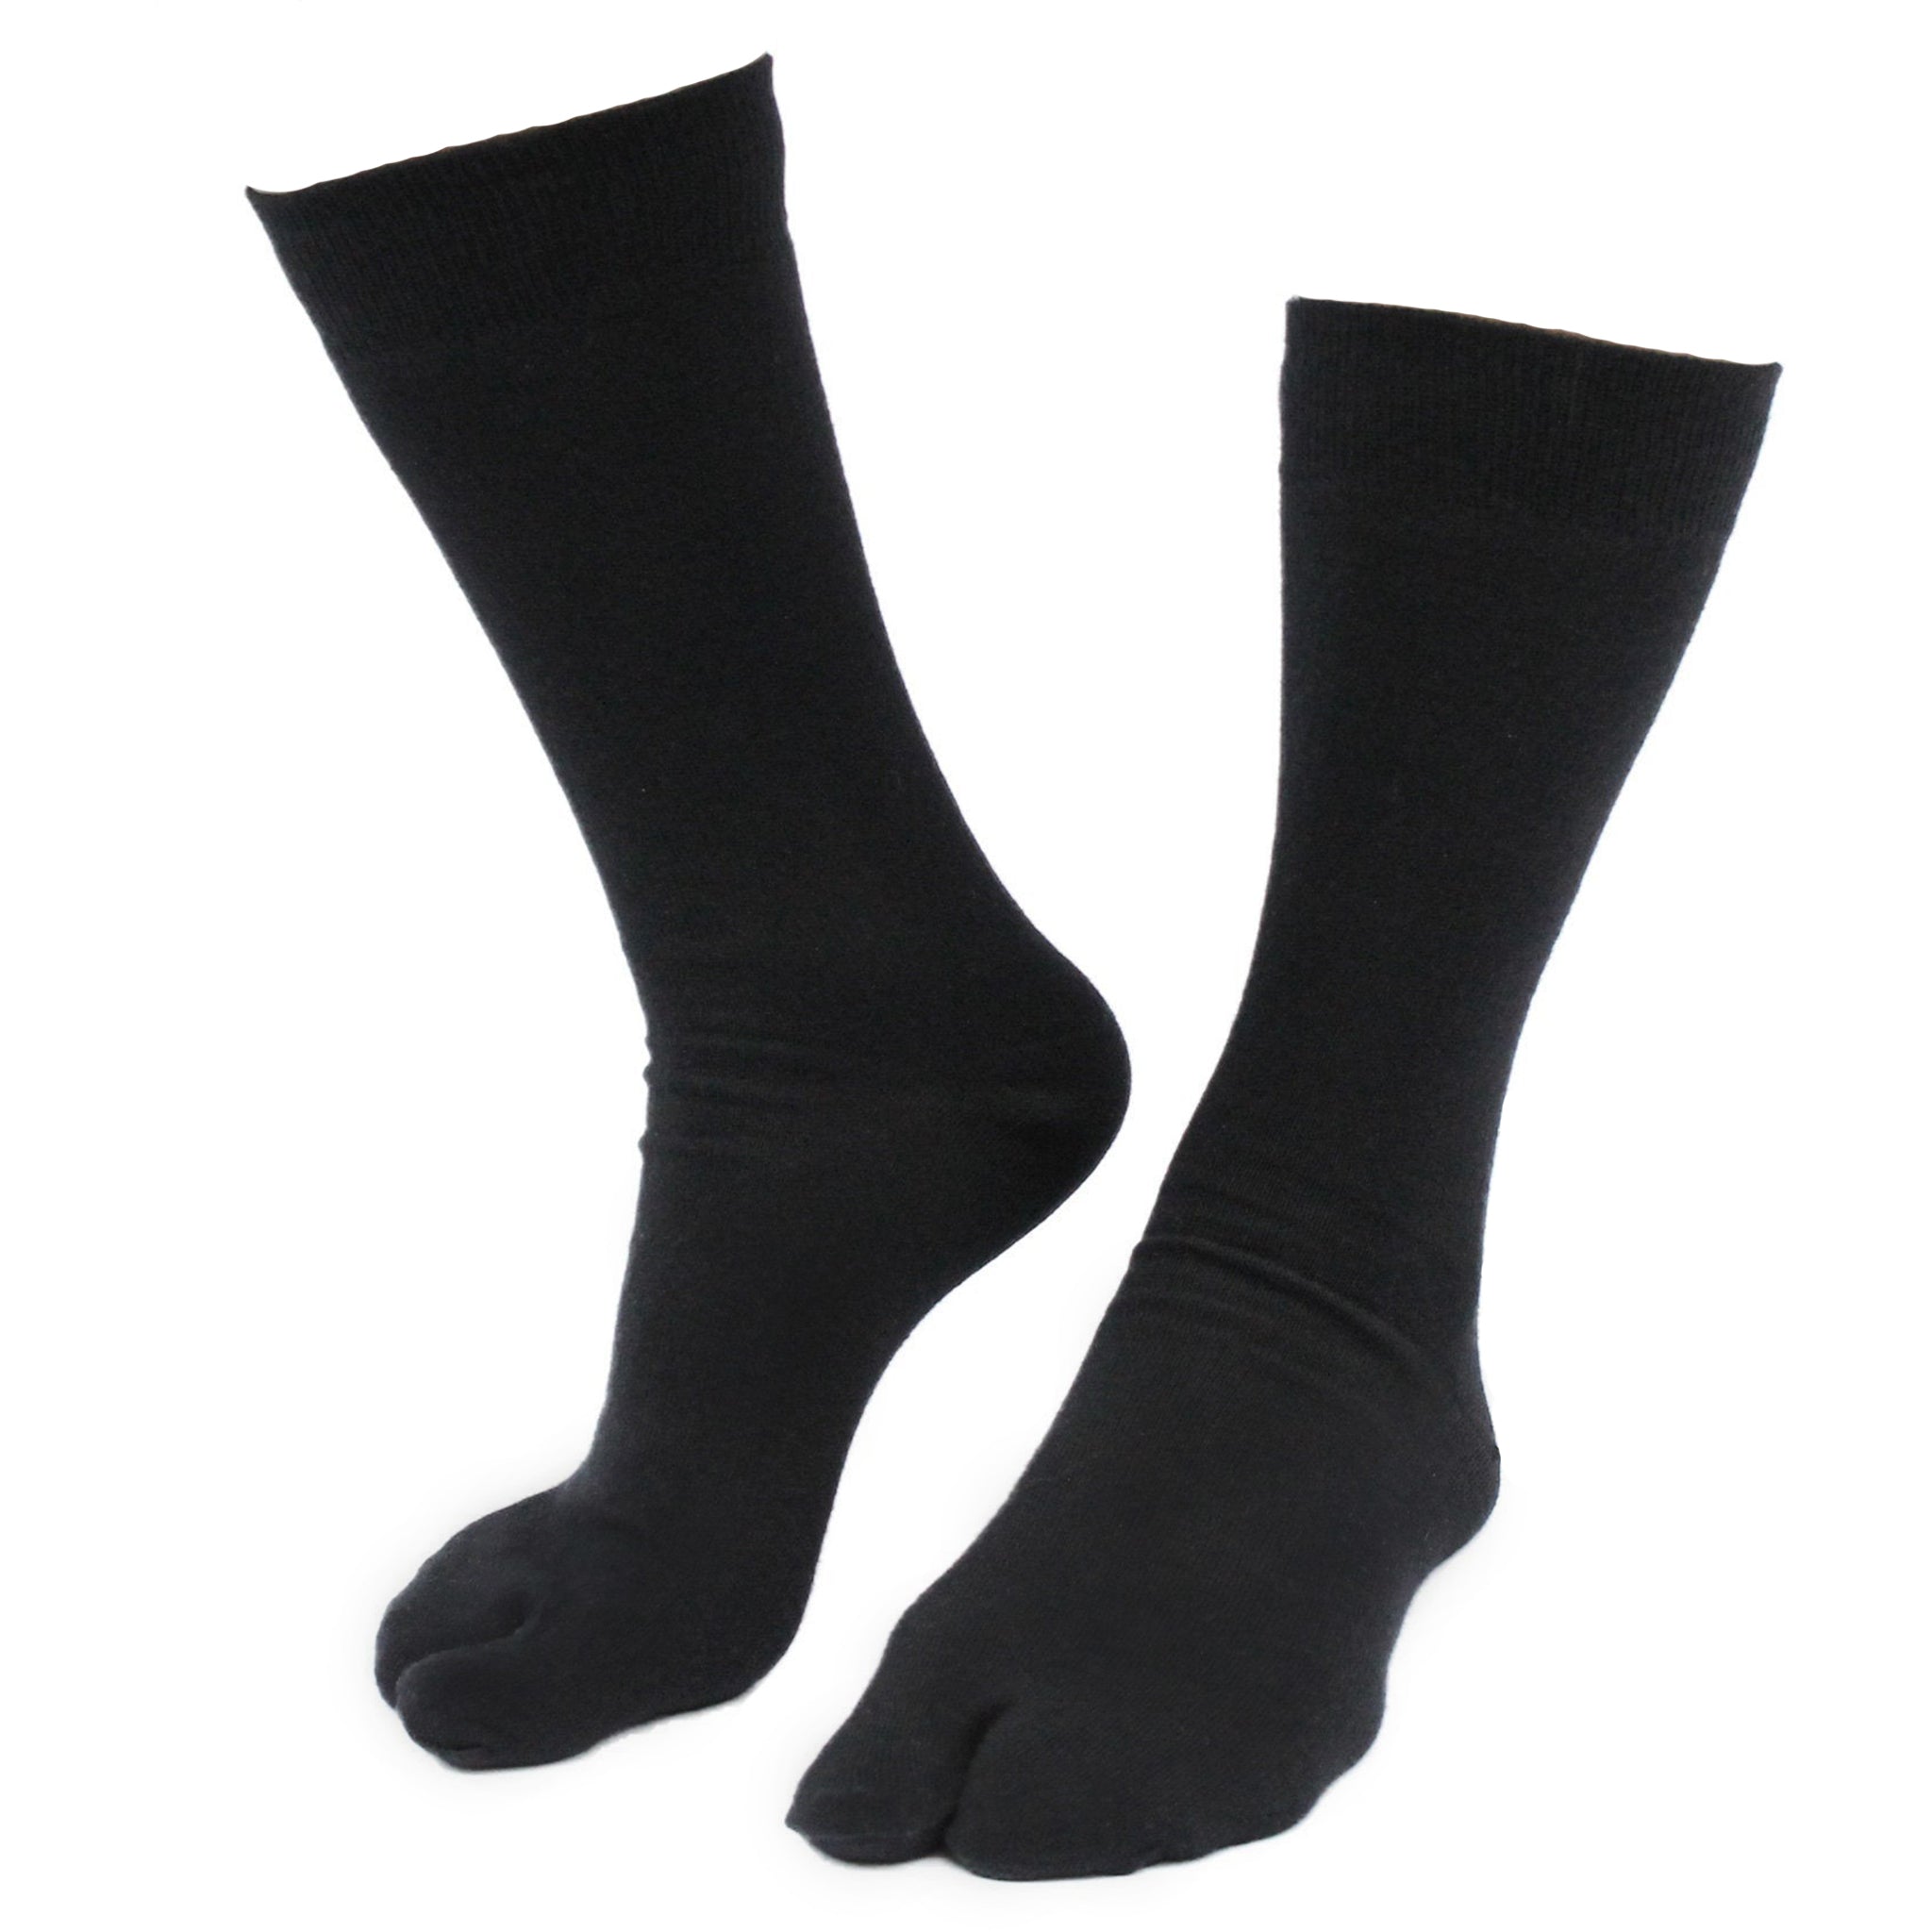 Skunk Boot Socks